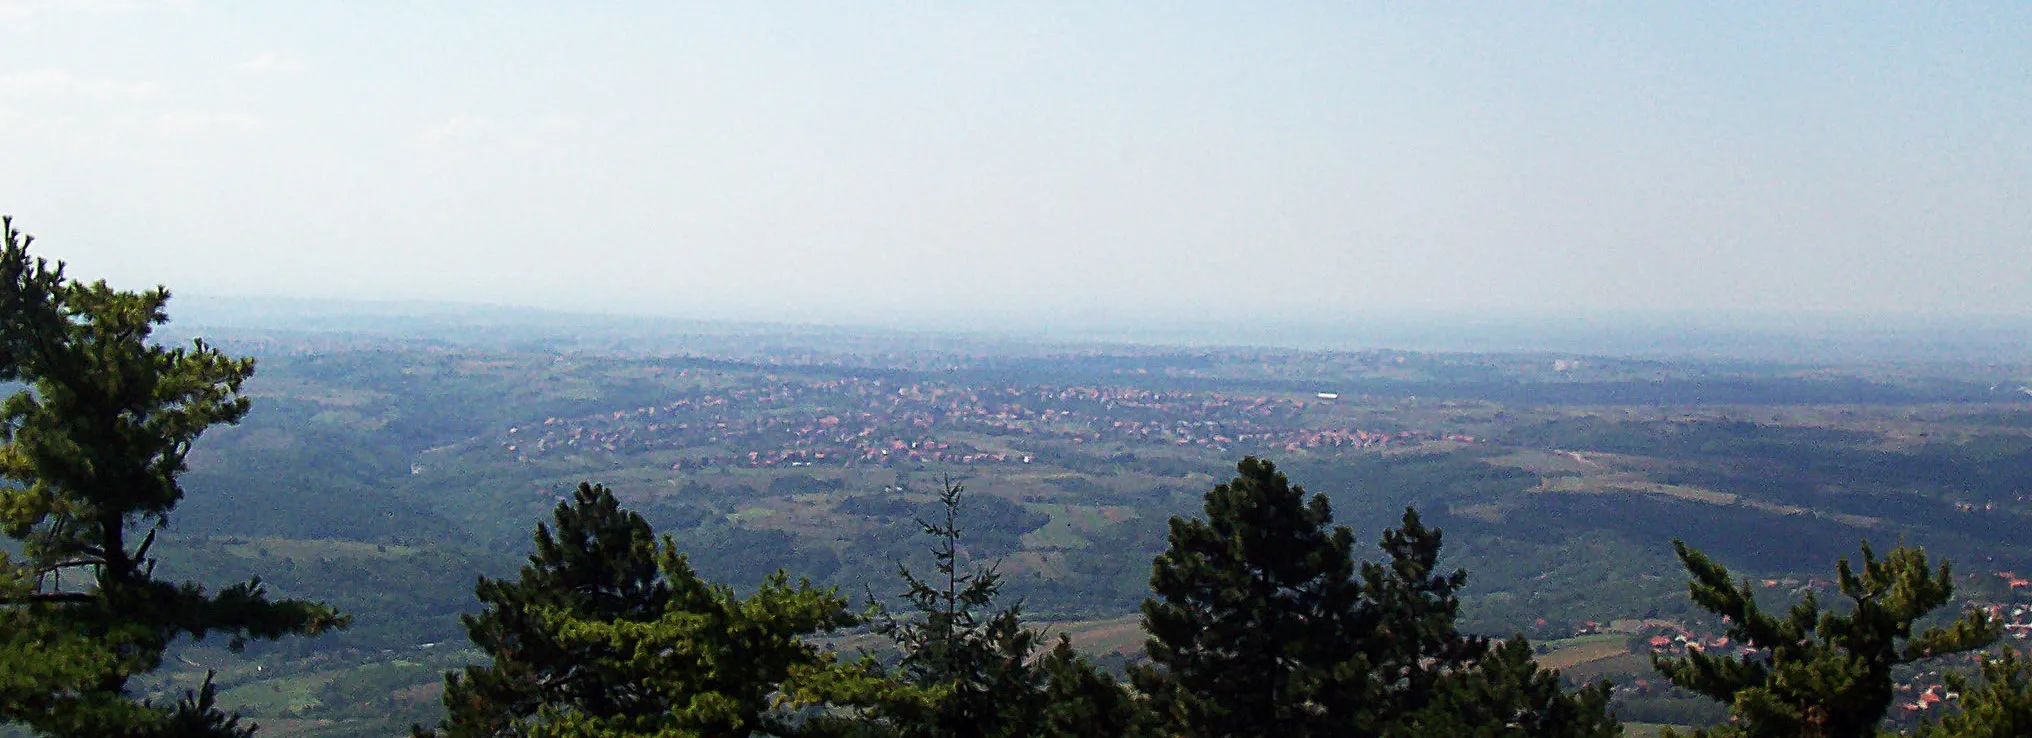 Image of Rušanj